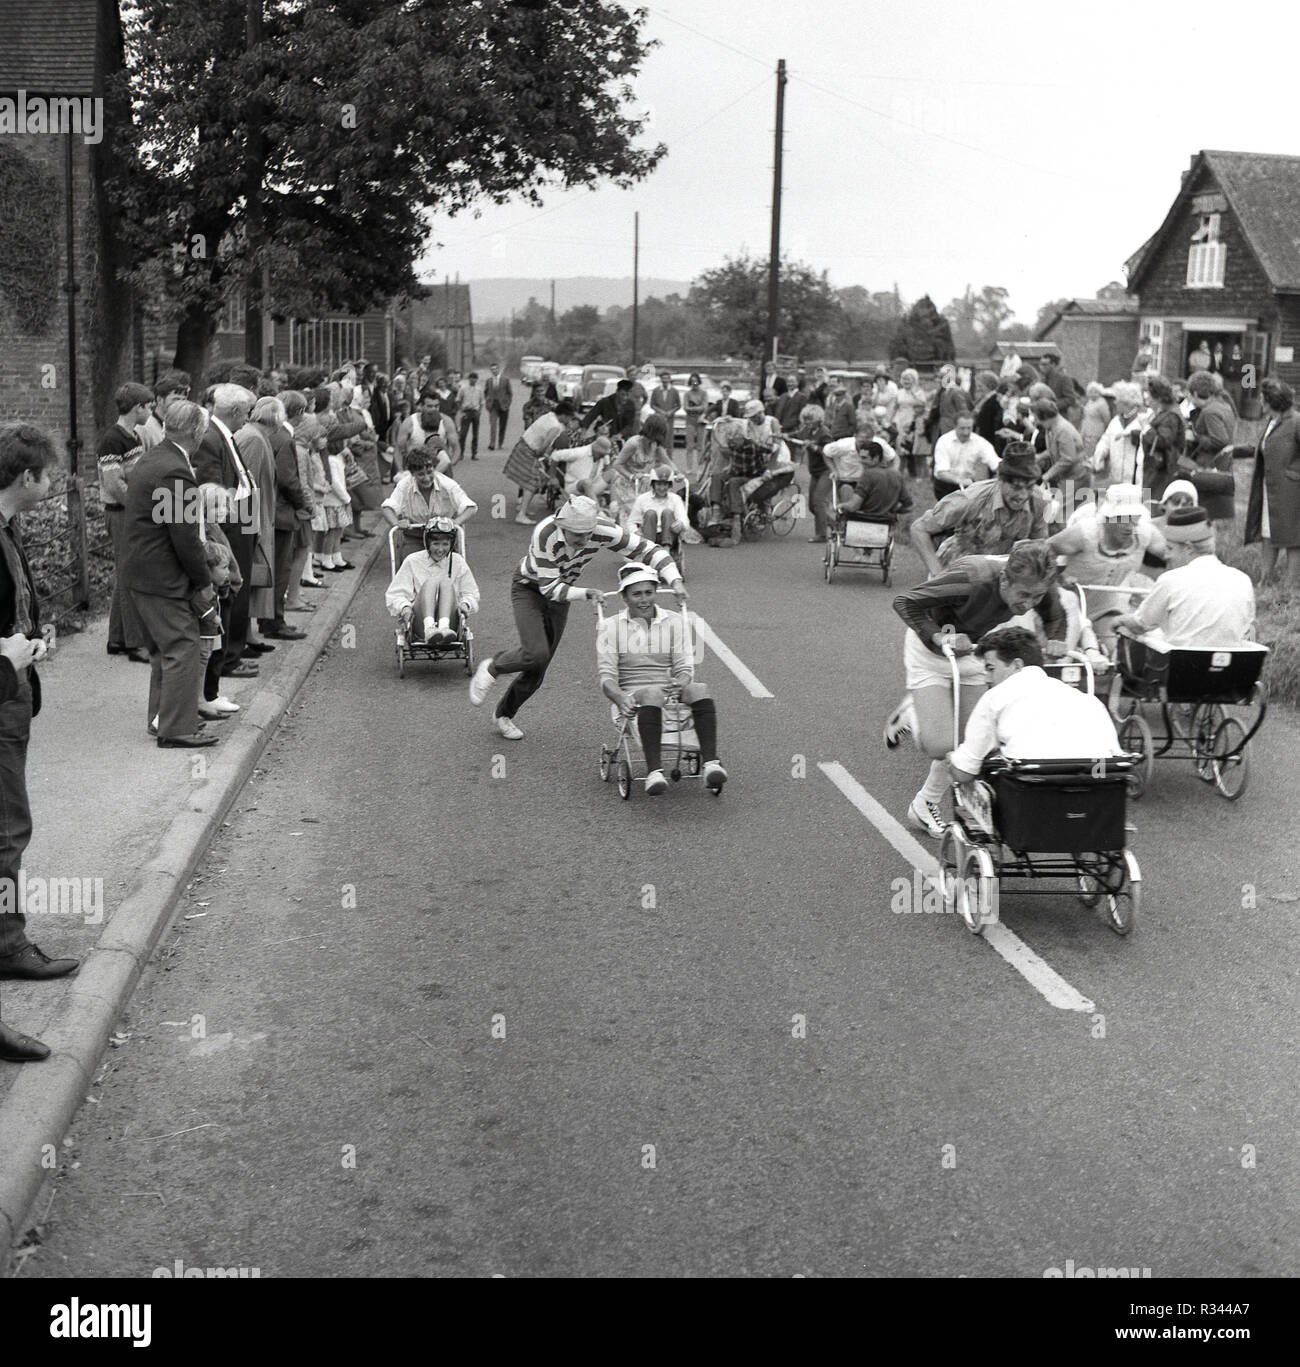 1967, und Ihre aus... der anfang des jährlichen pram Rennen erhält unterwegs bei Quainton Dorf, in der Nähe von Aylesbury, Buckinghamshire, England, UK. Ein eindeutig exzentrischen Britischen Dorf Ereignis, es sieht erwachsene Männer, verkleidet als "Babys im Kinderwagen sitzen und schob mit hoher Geschwindigkeit entlang einer Landstraße. Stockfoto